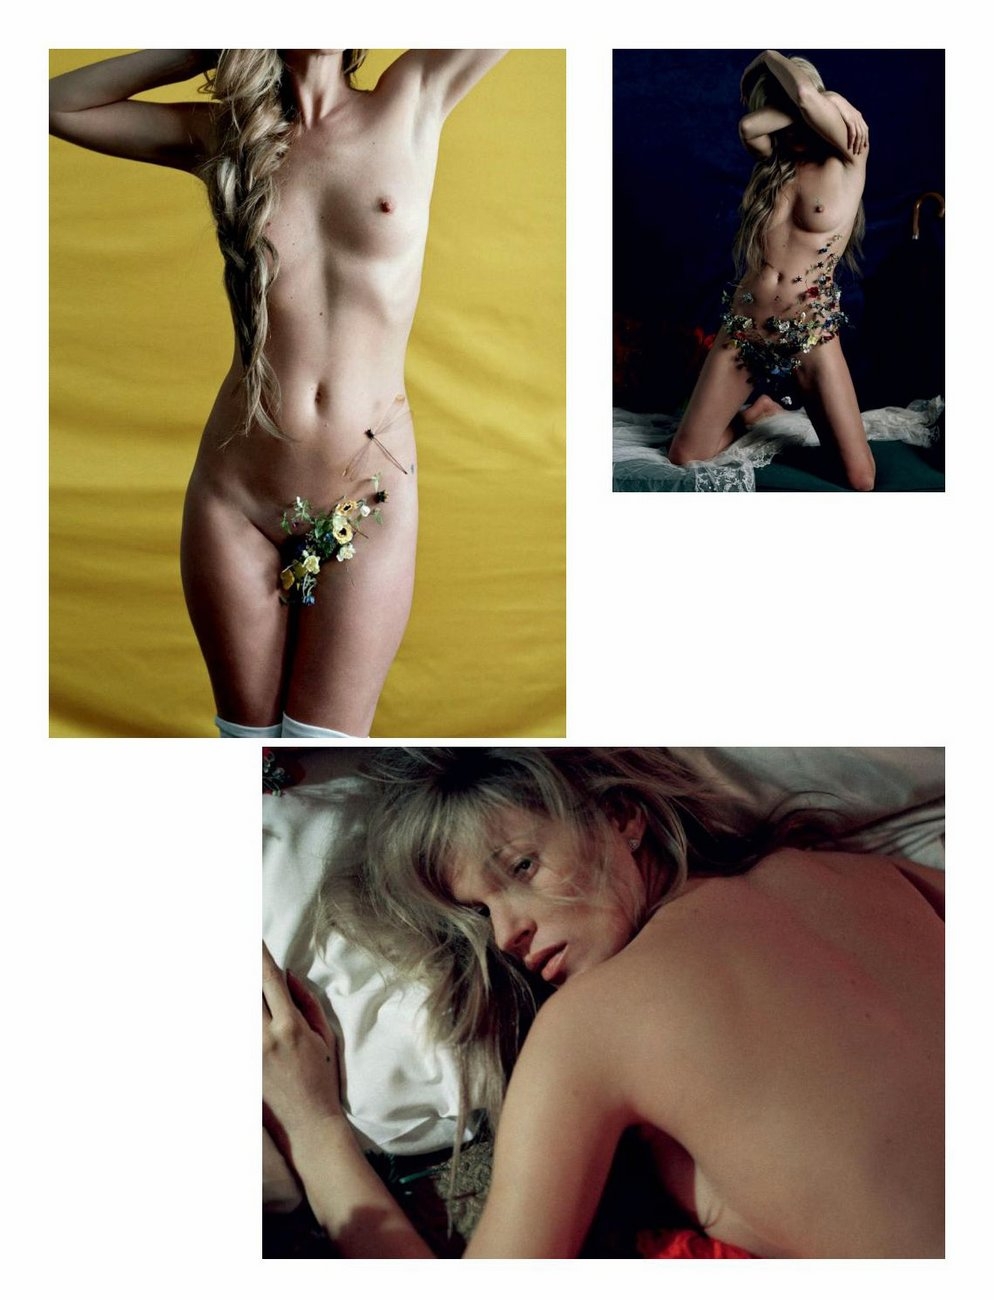 Порно фото со знаменитой и удивительно привлекательной Кейт Мосс